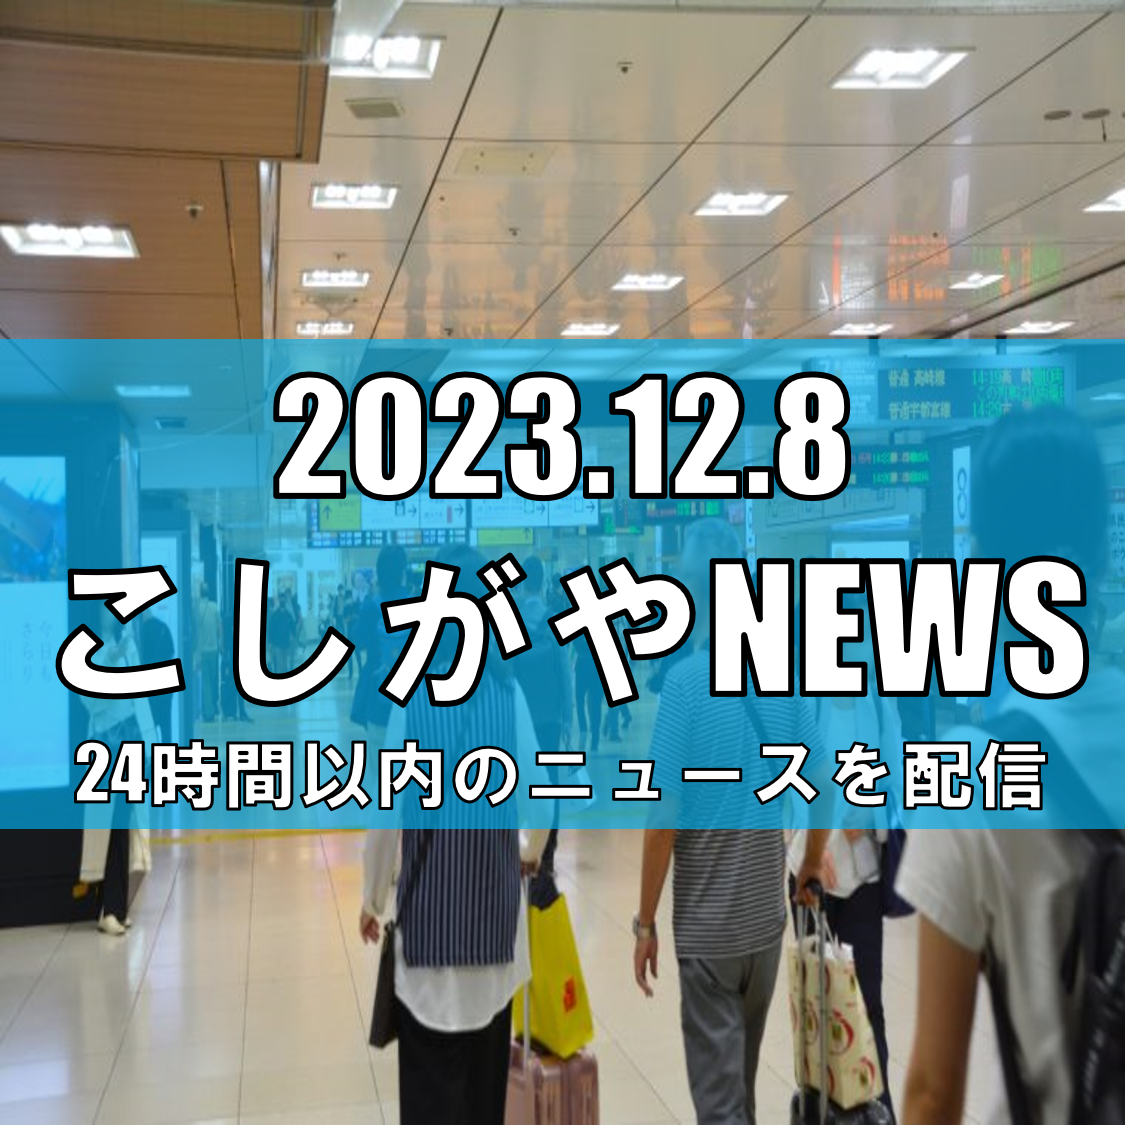 埼玉県の人口動向に関する報告【越谷ニュース】